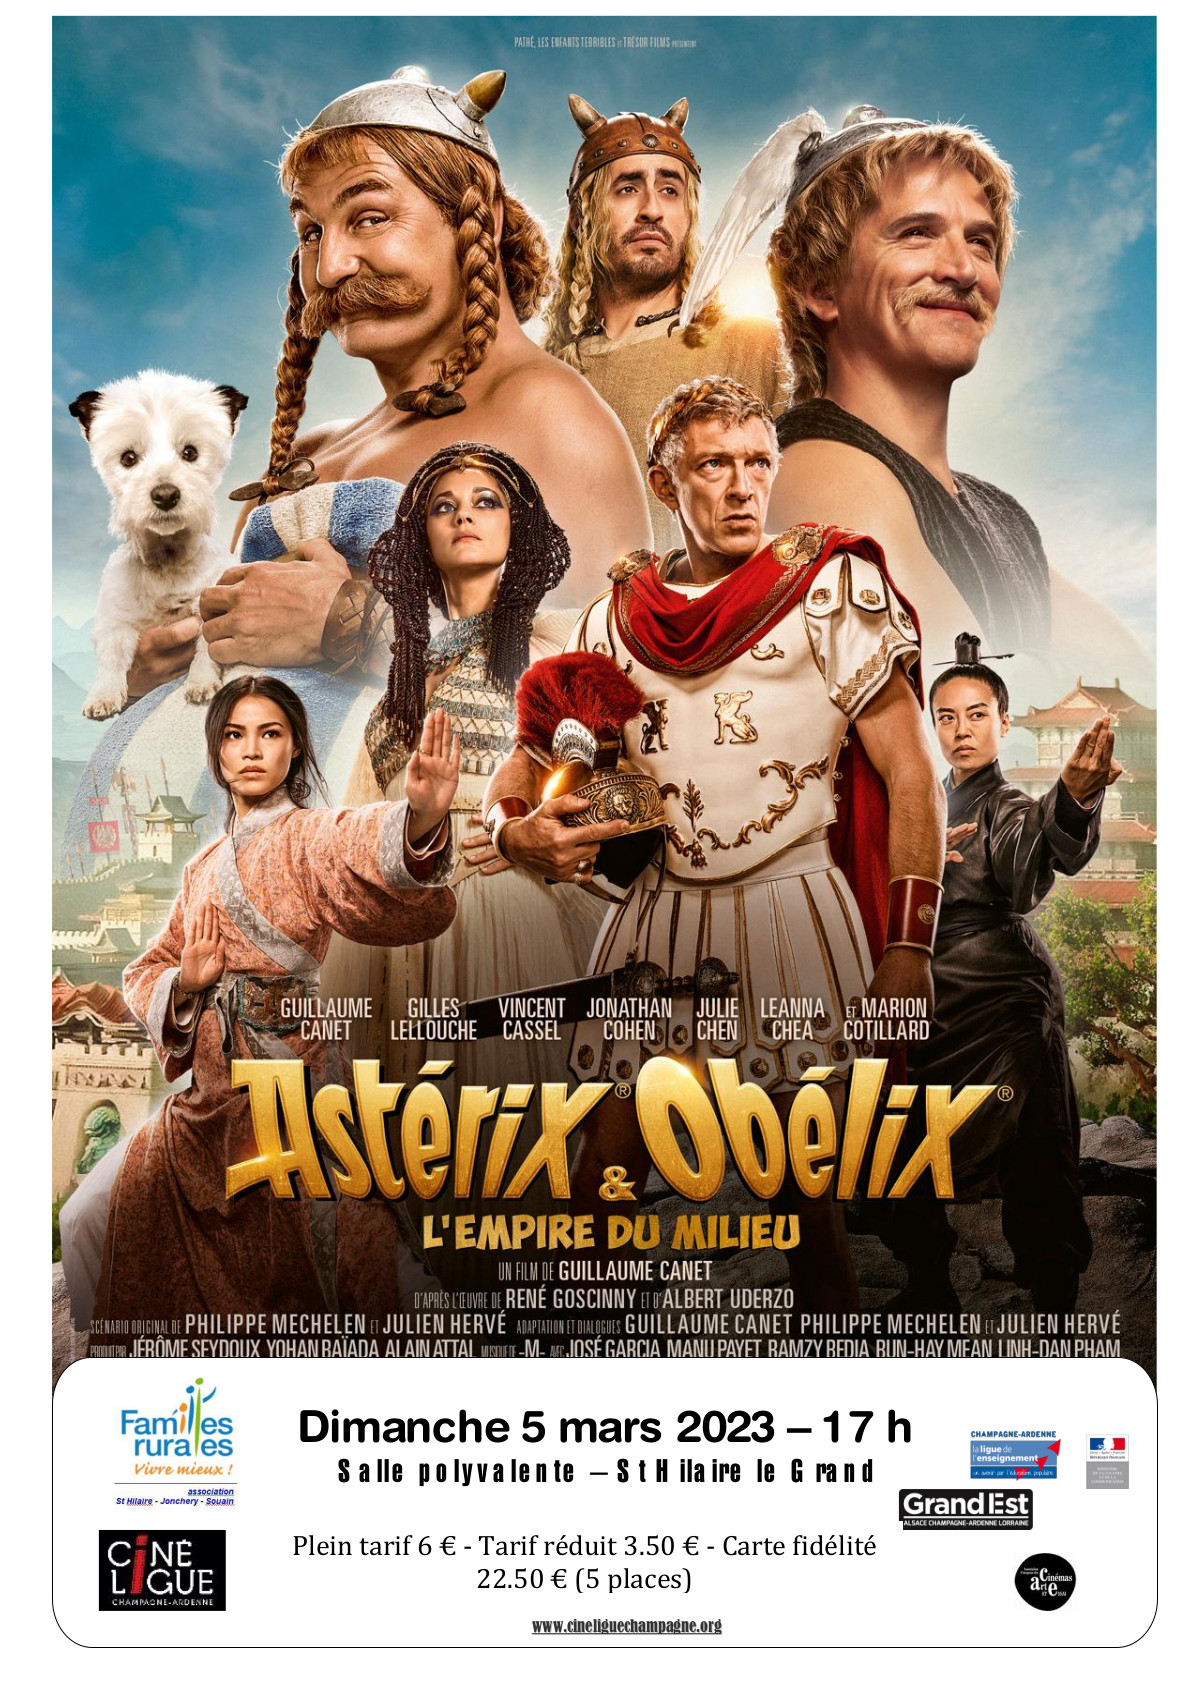 2023 03 05 asterix